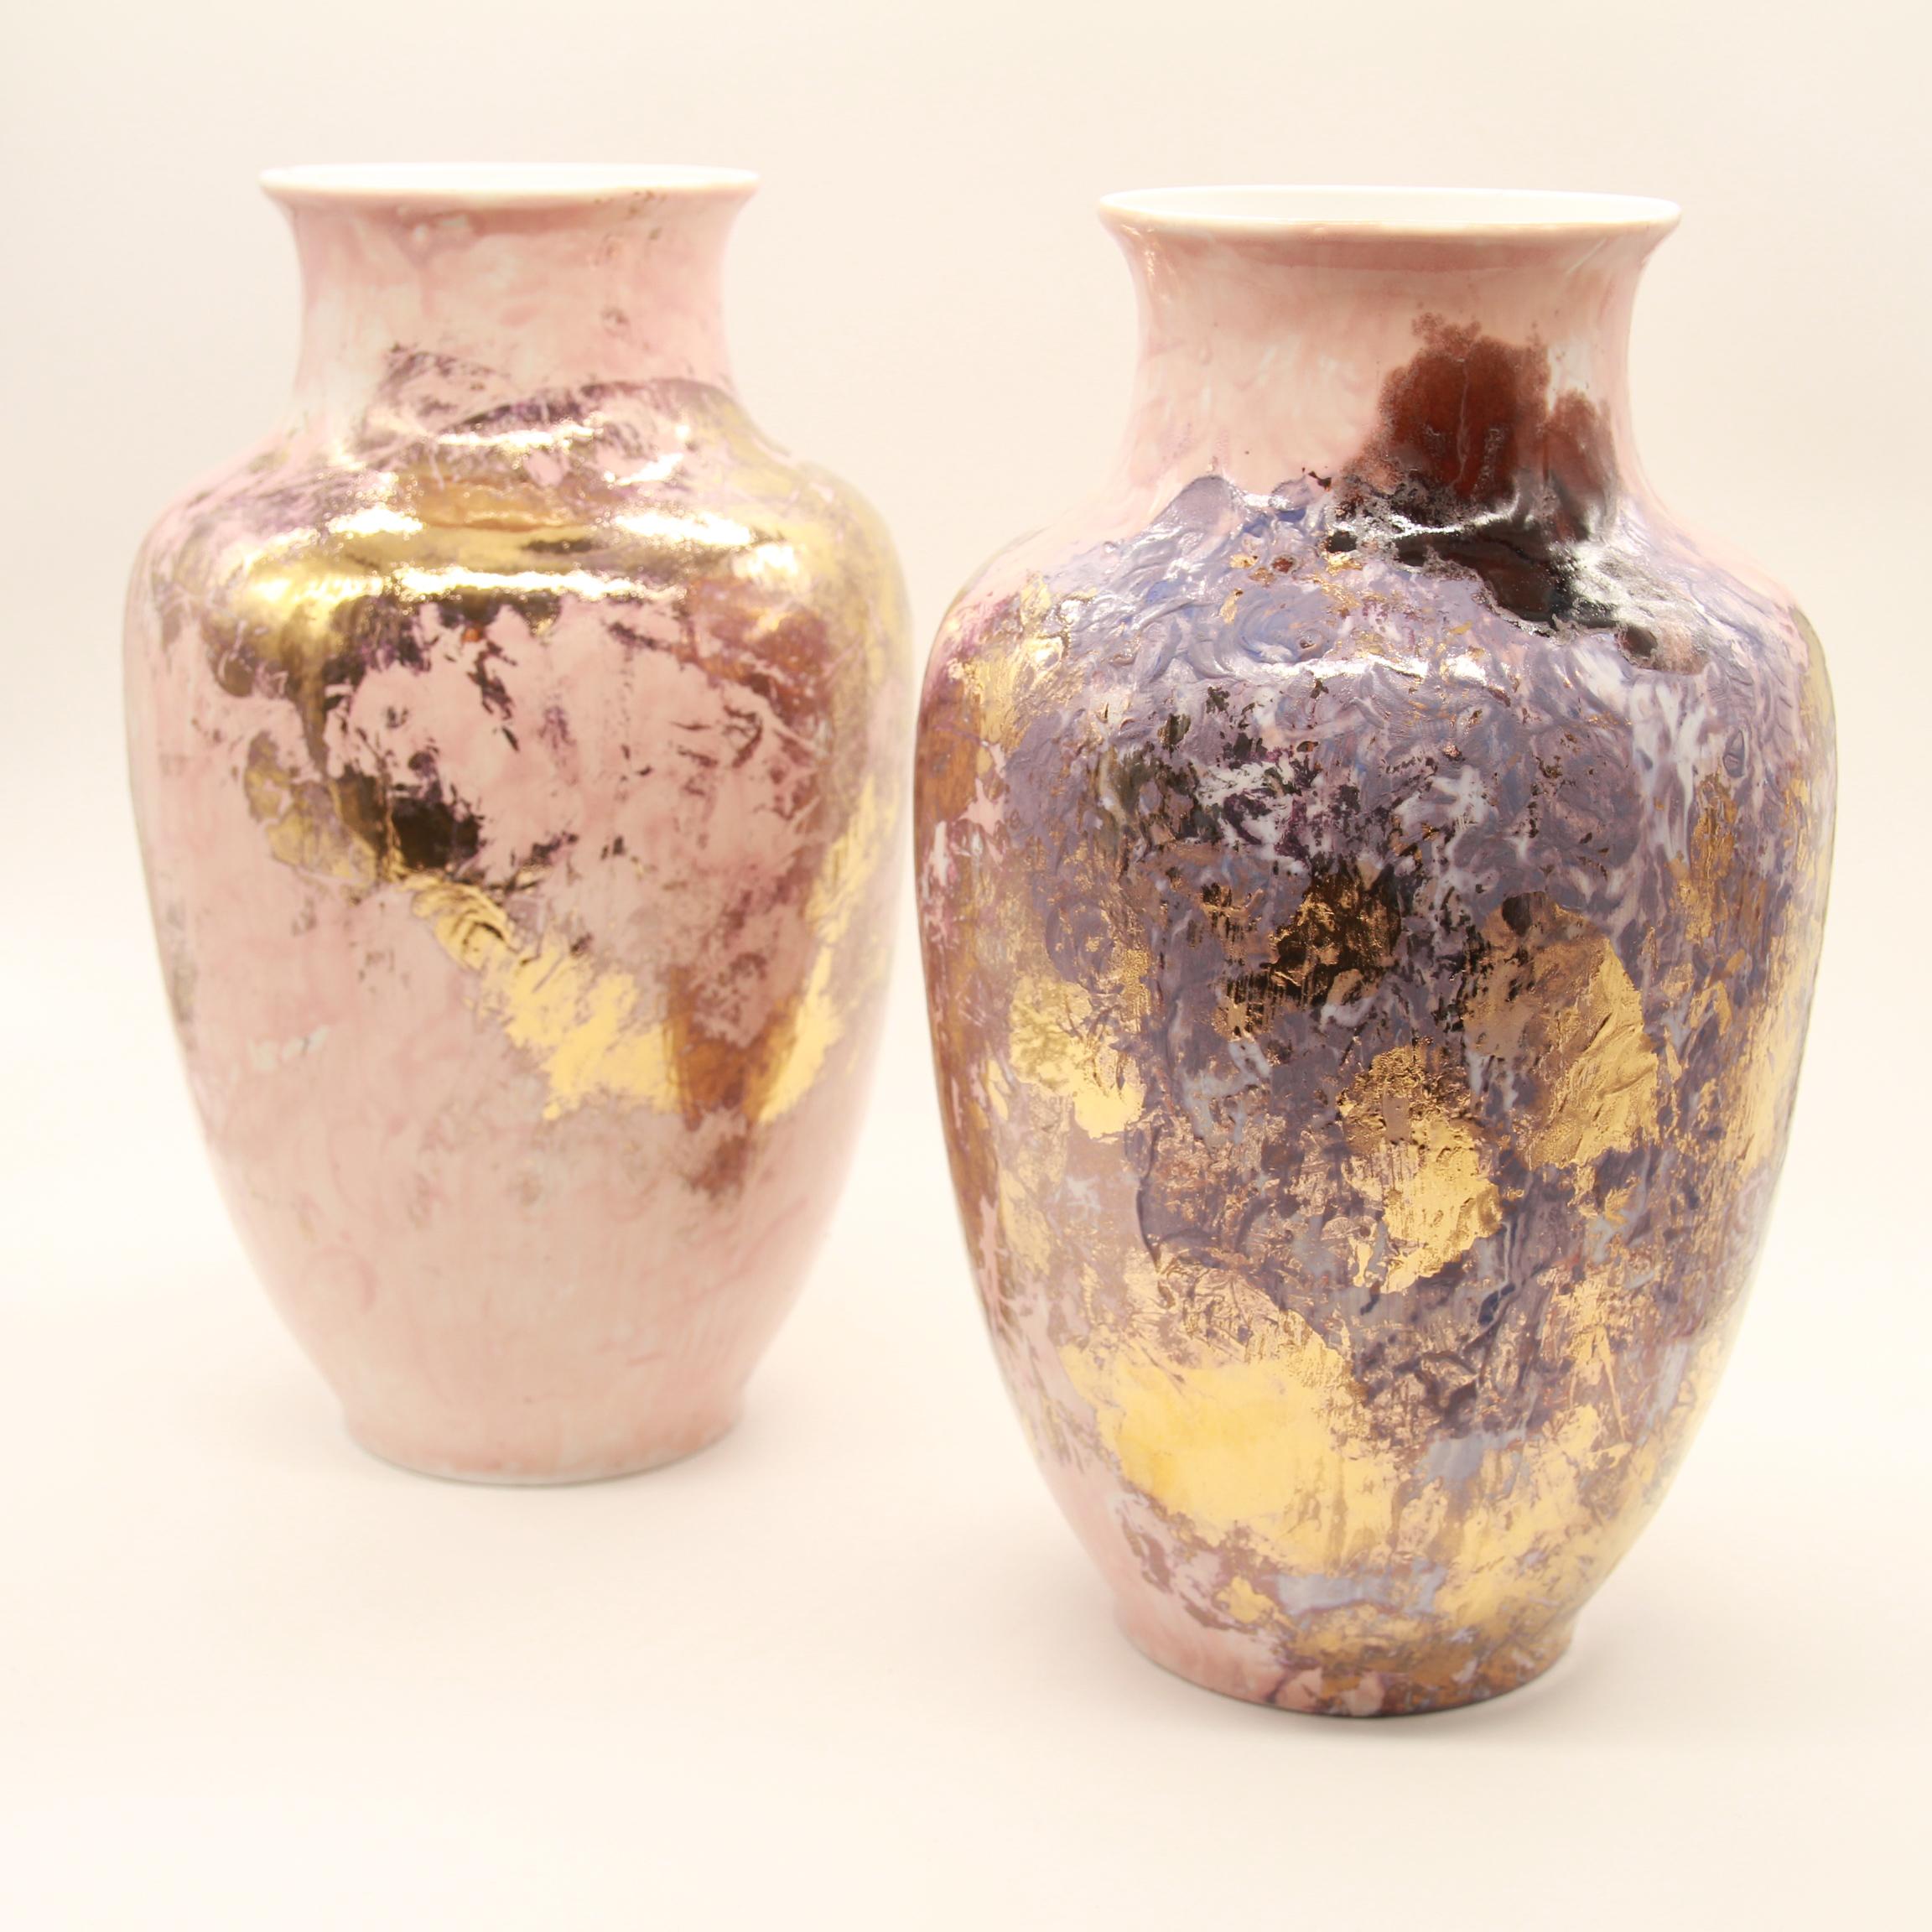 N°2 Vase Series 2 is Presented by Spazio Nobile

Sculptural vase, Limoges Porcelain glazed by Marie Corbin, OR 10%.
 